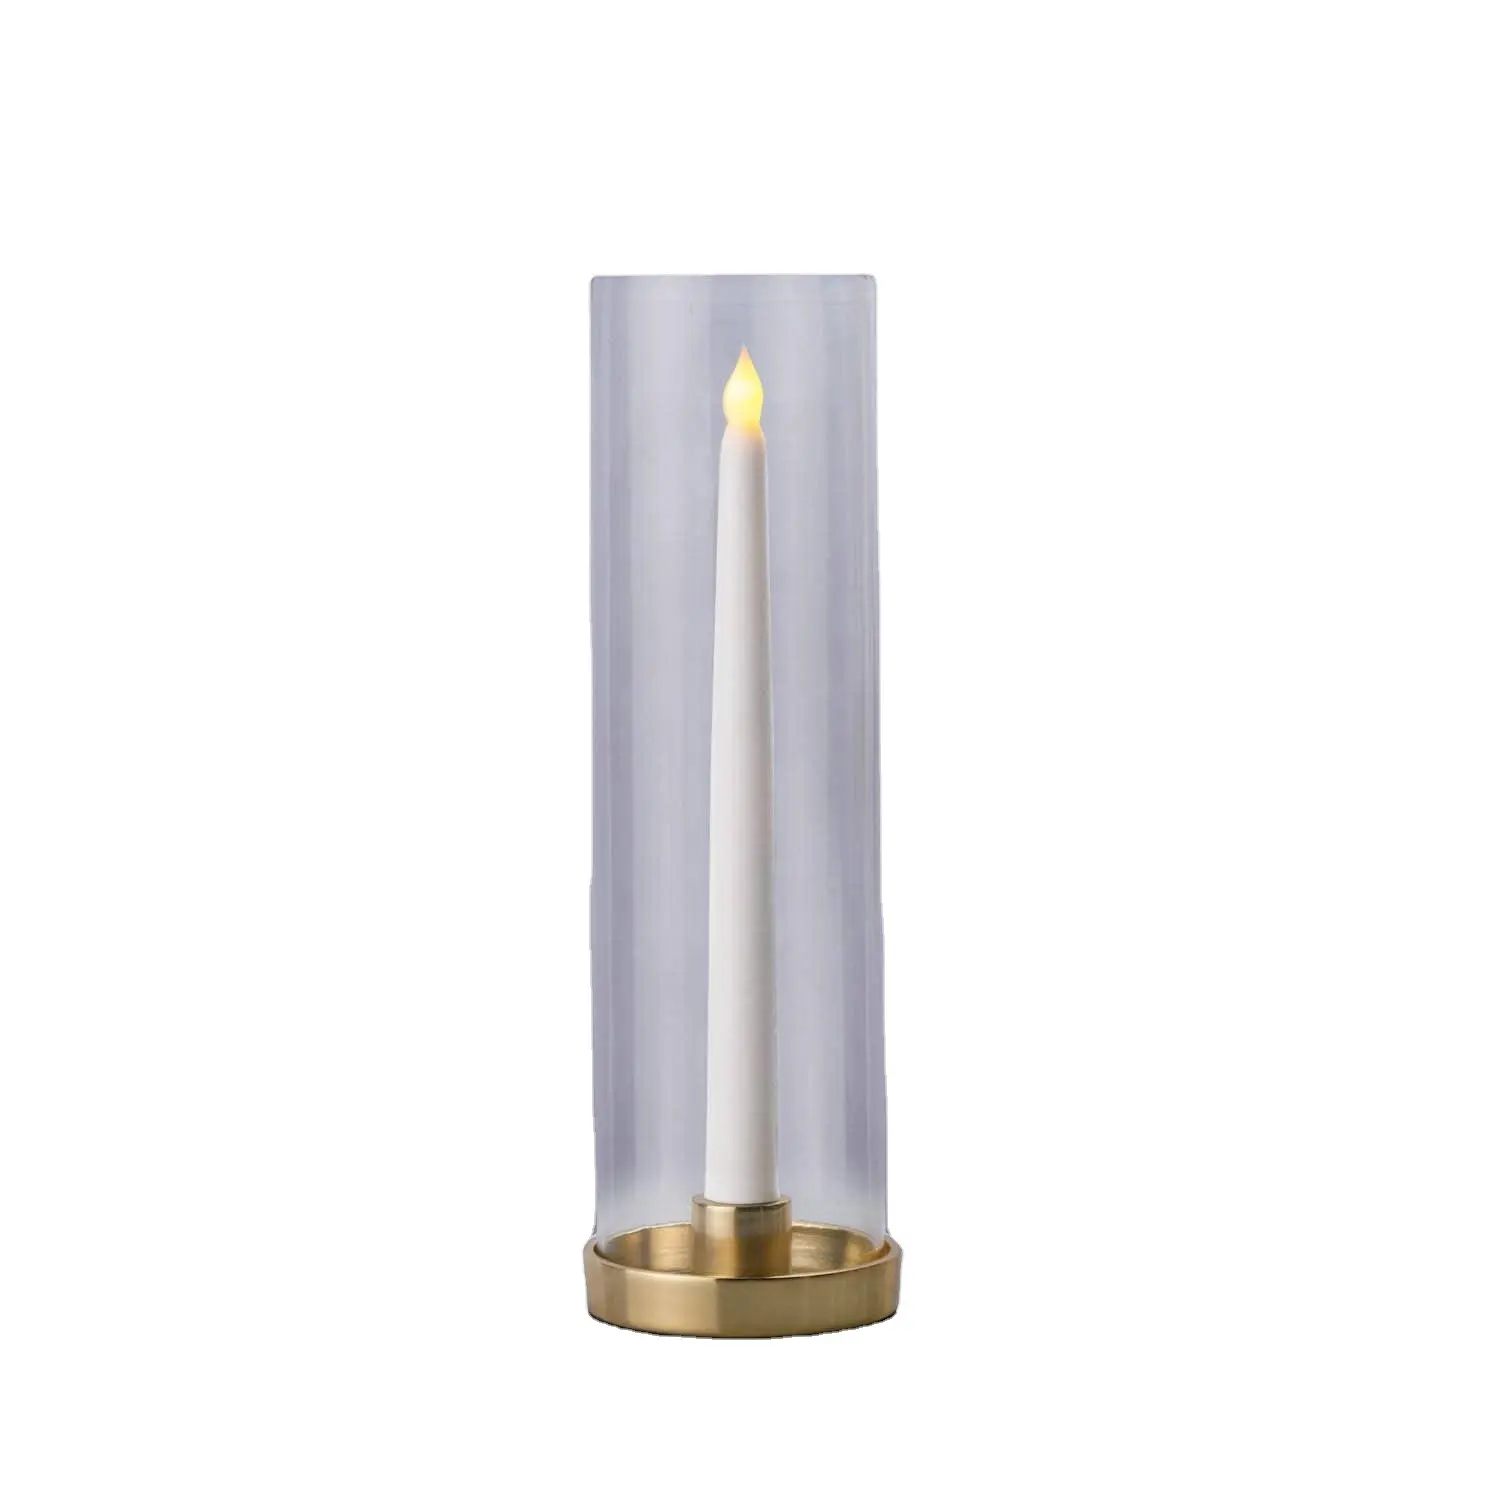 Hurricane suporte de velas de vidro, suporte de velas de vidro transparente com base de latão de 12 polegadas e tubo de diâmetro de 3 polegadas para mesas de casamento